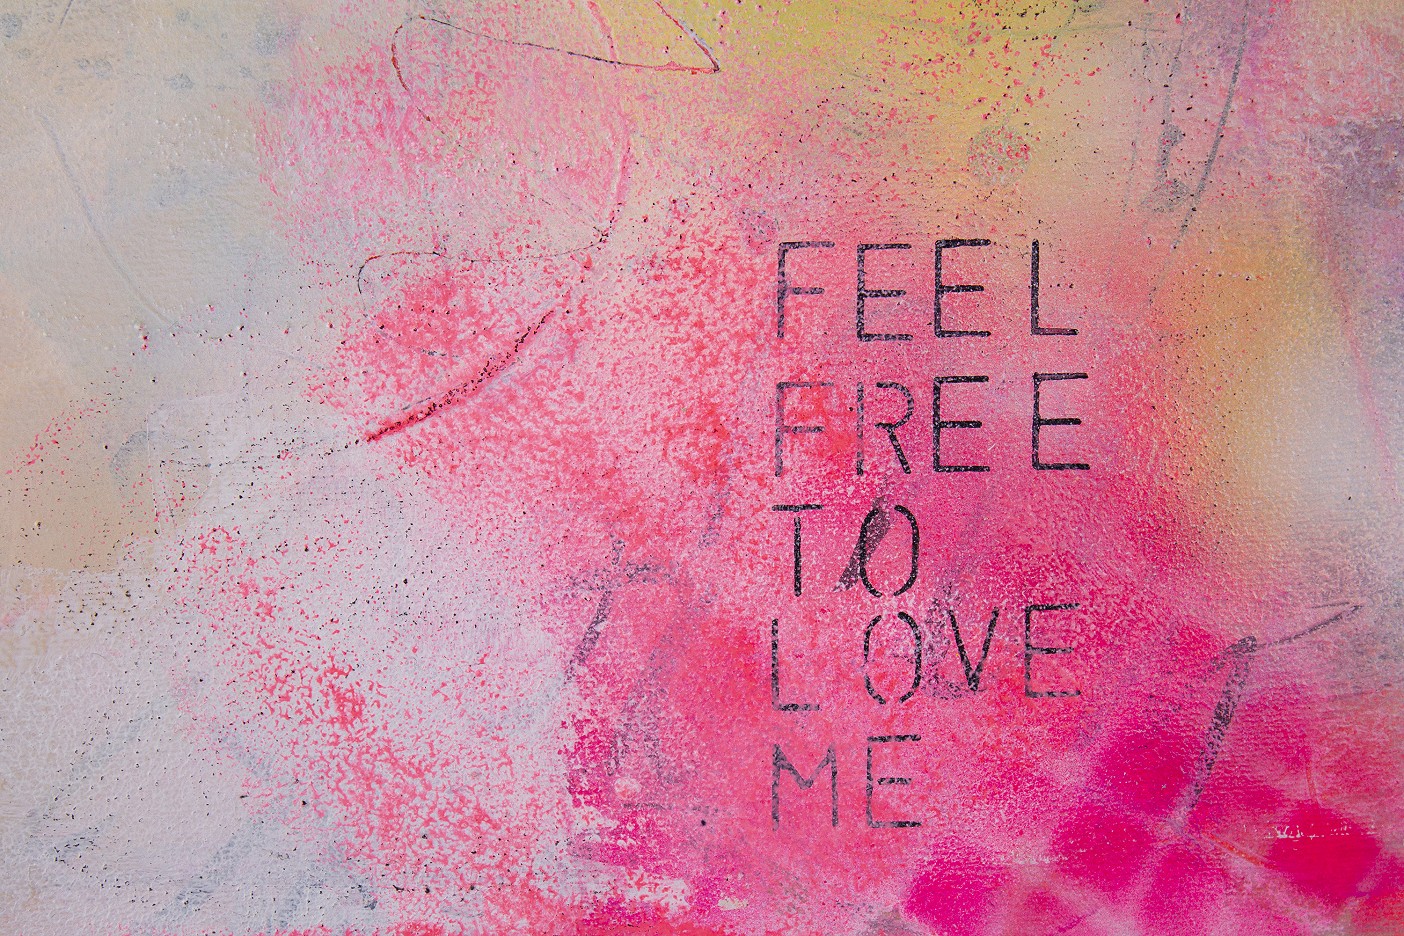 Feel free to love me